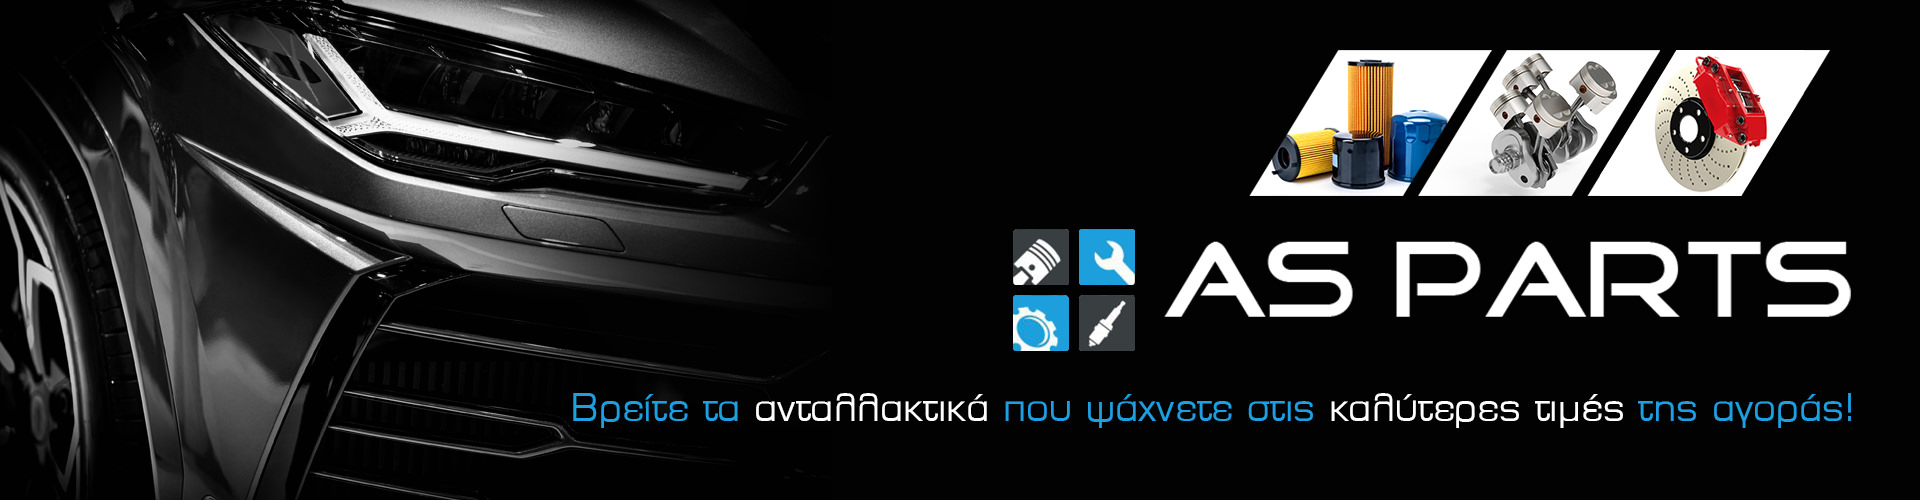 Ανταλλακτικά Αυτοκινήτων Online | Asparts.gr